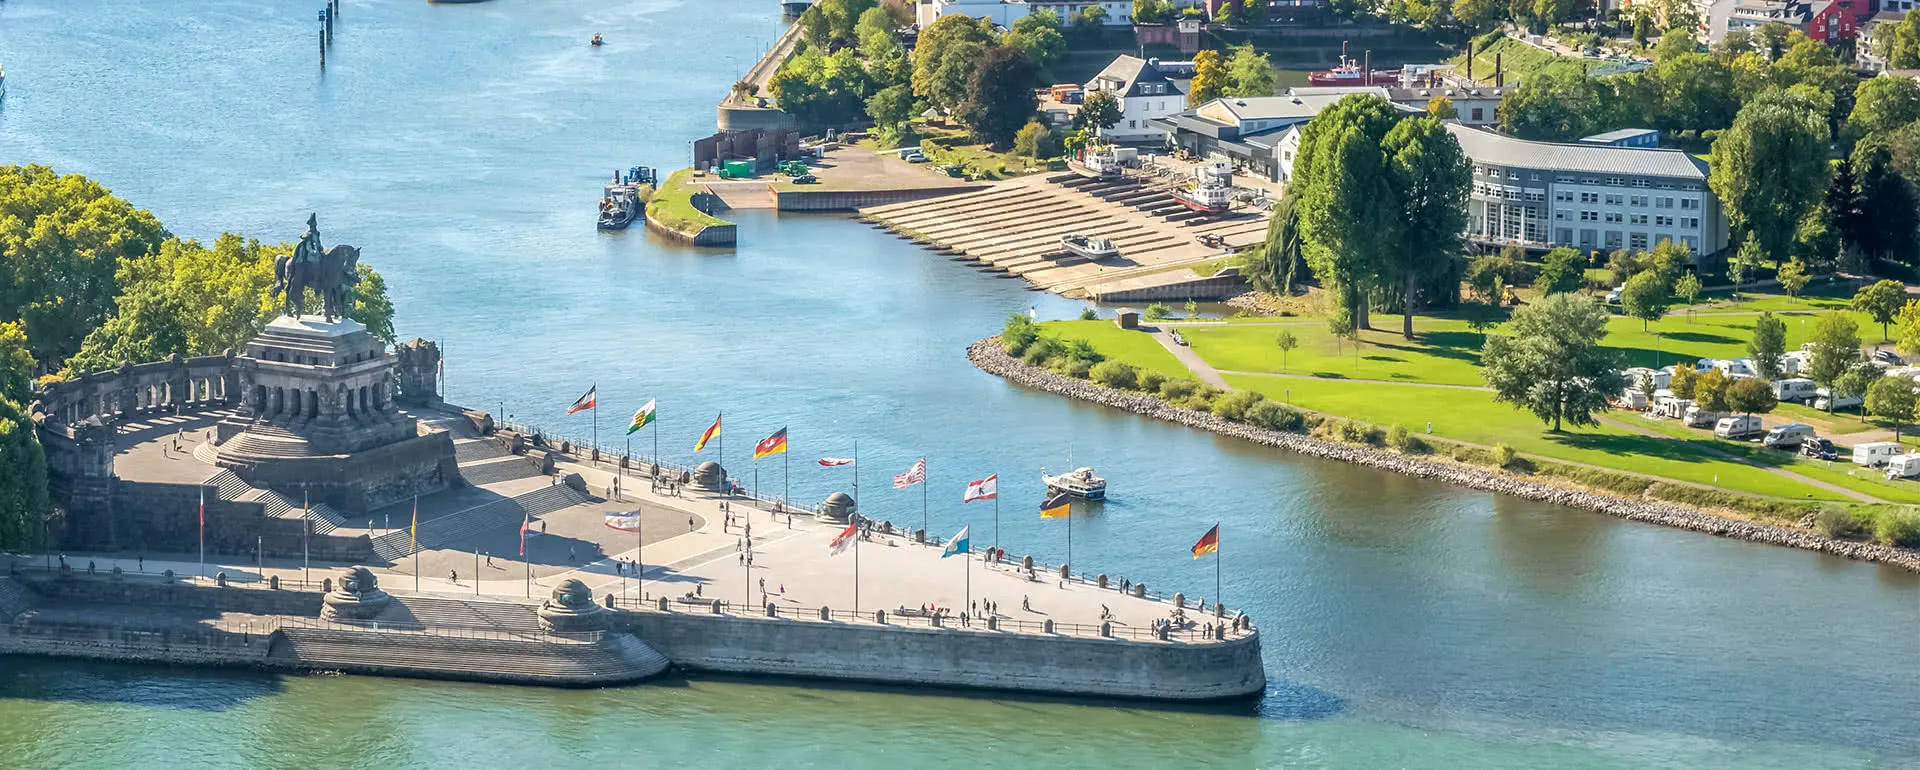 Koblenz panorama image